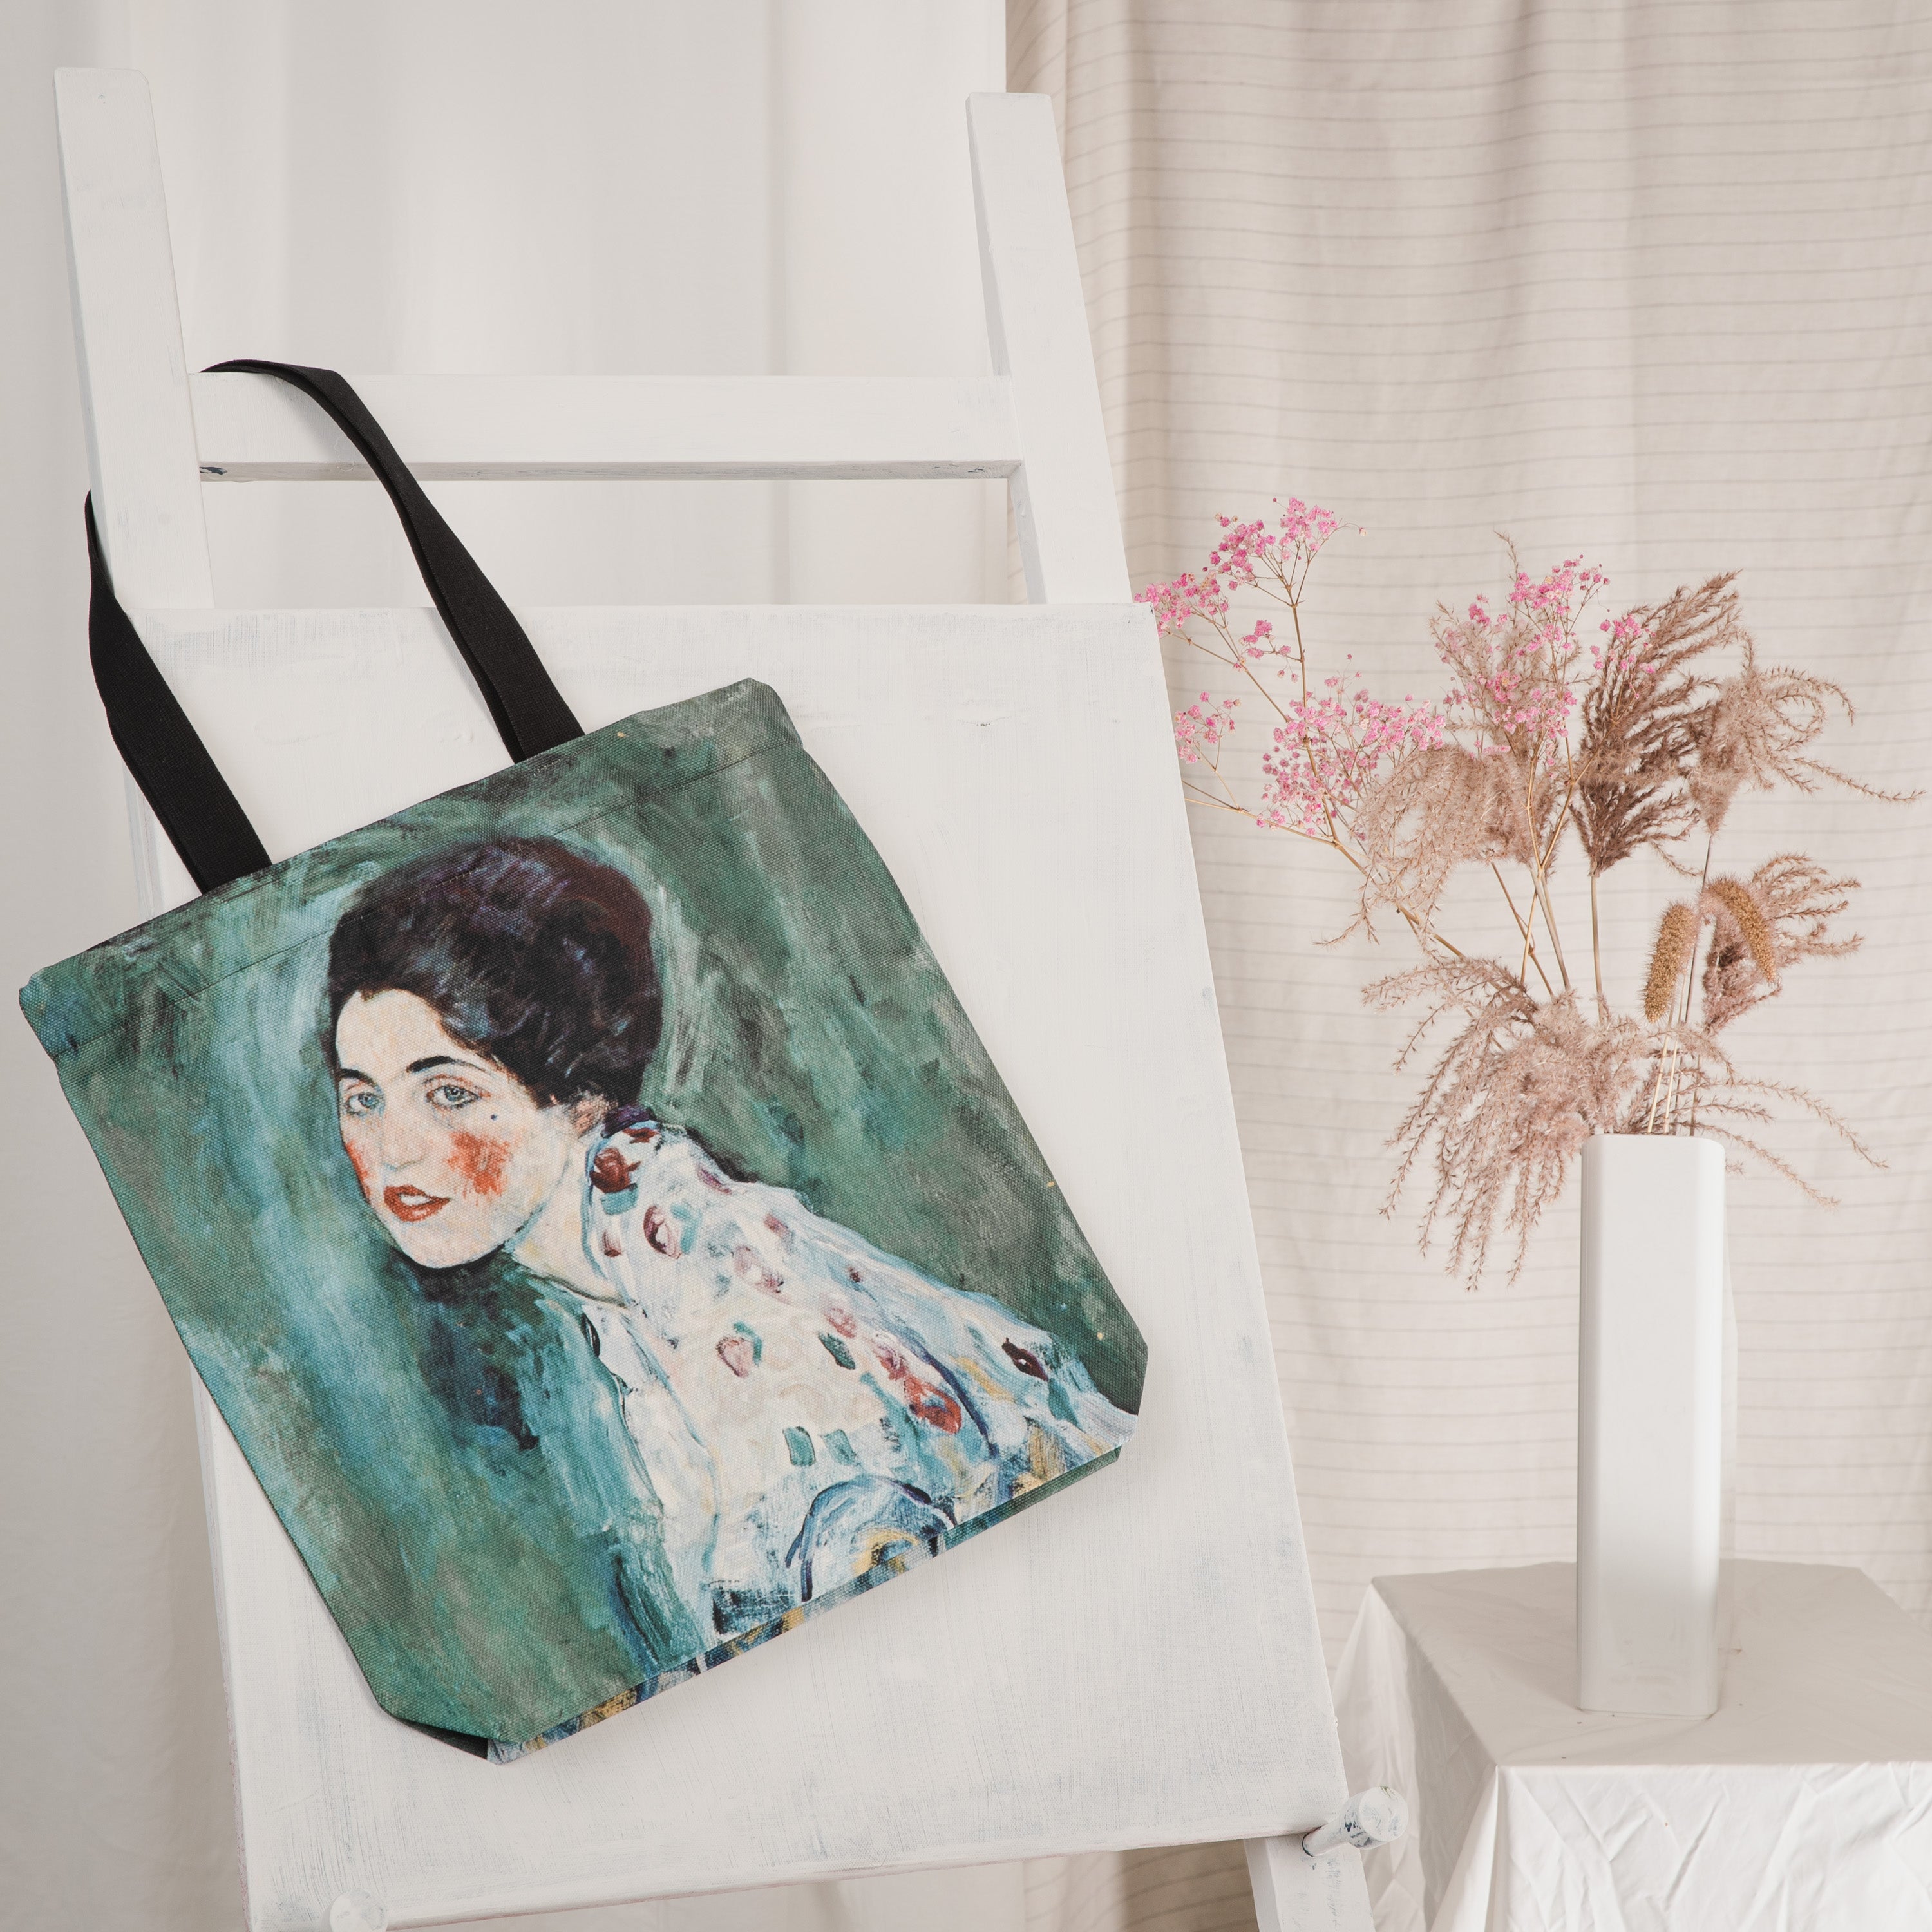 Shopping bag Gustav Klimt "Portrait of a Lady"